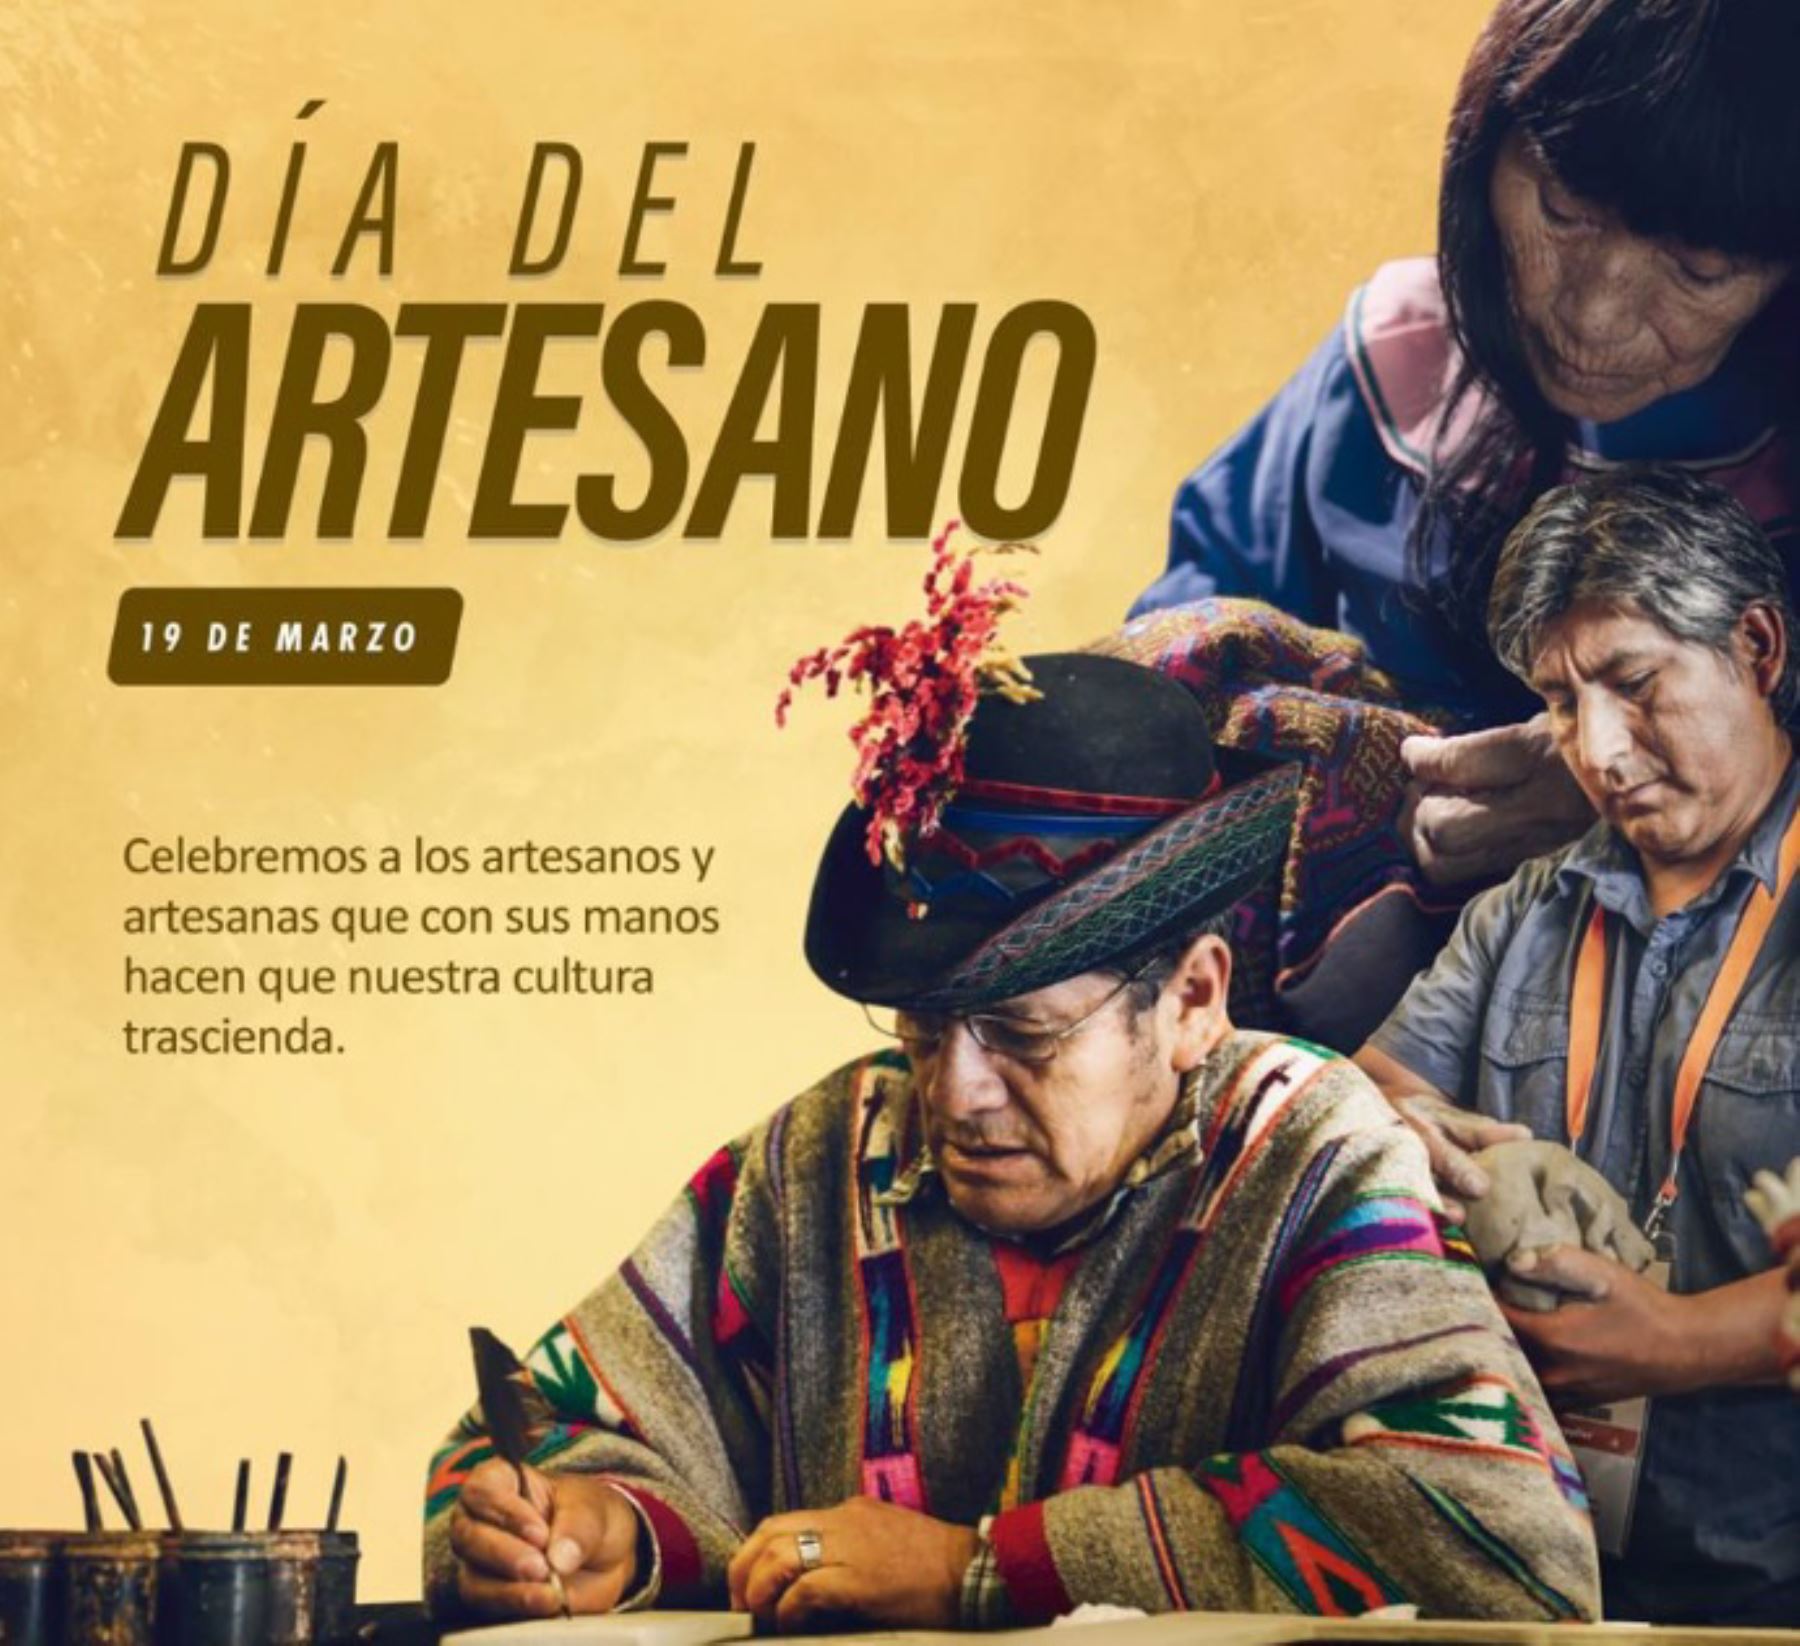 Hoy se celebra el Día del Artesano y cabe indicar que en el Perú existen 76,085 personas dedicadas a esta actividad inscritas en el Registro Nacional del Artesano (RNA) del Ministerio de Comercio Exterior y Turismo (Mincetur), de las cuales el 74% son mujeres.